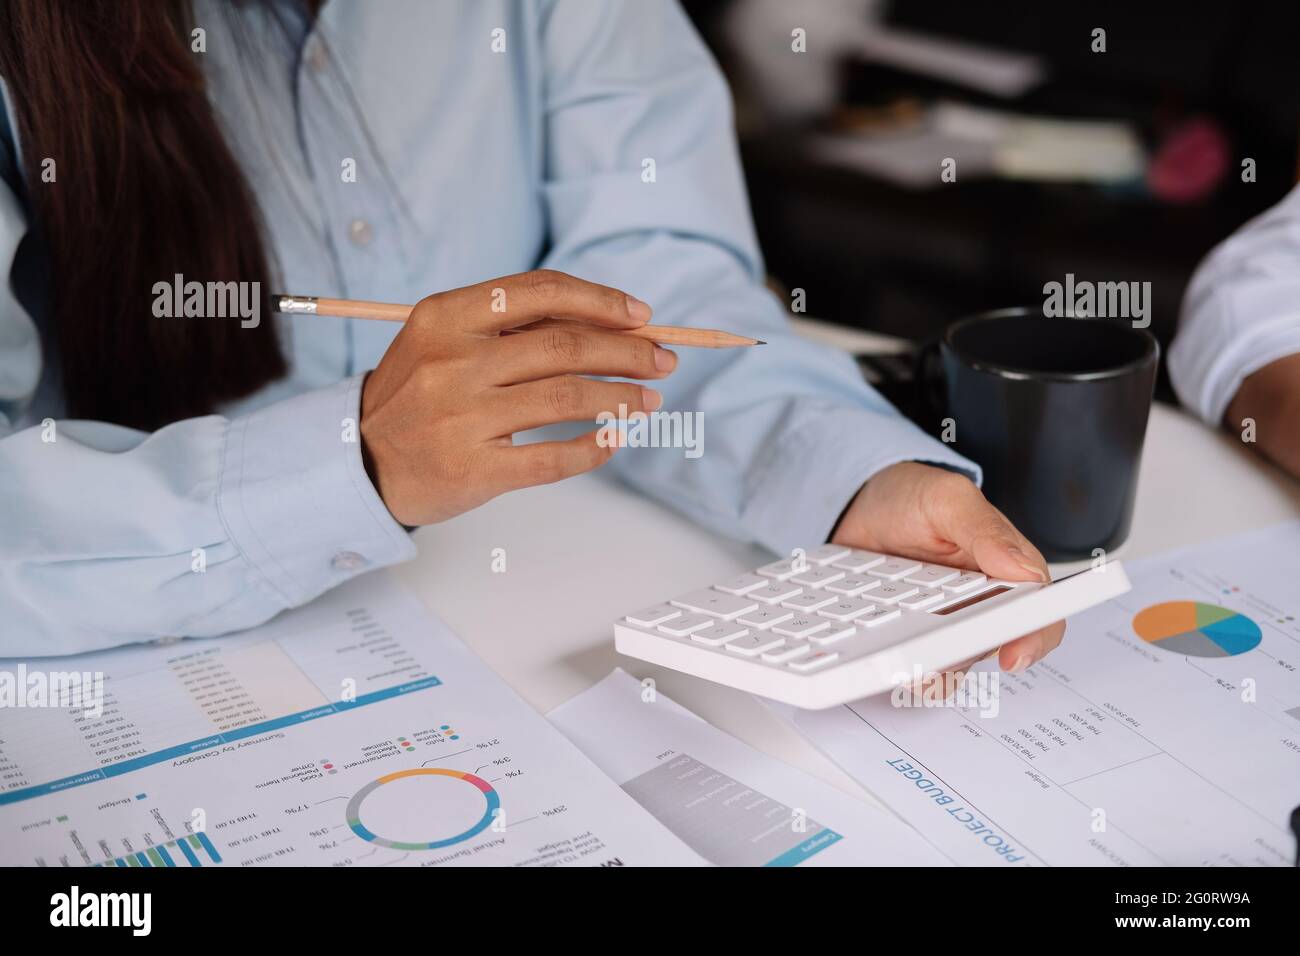 Femme d'affaires travaillant dans la finance et la comptabilité analyse du budget financier avec la calculatrice. Concept de travail à domicile. Banque D'Images